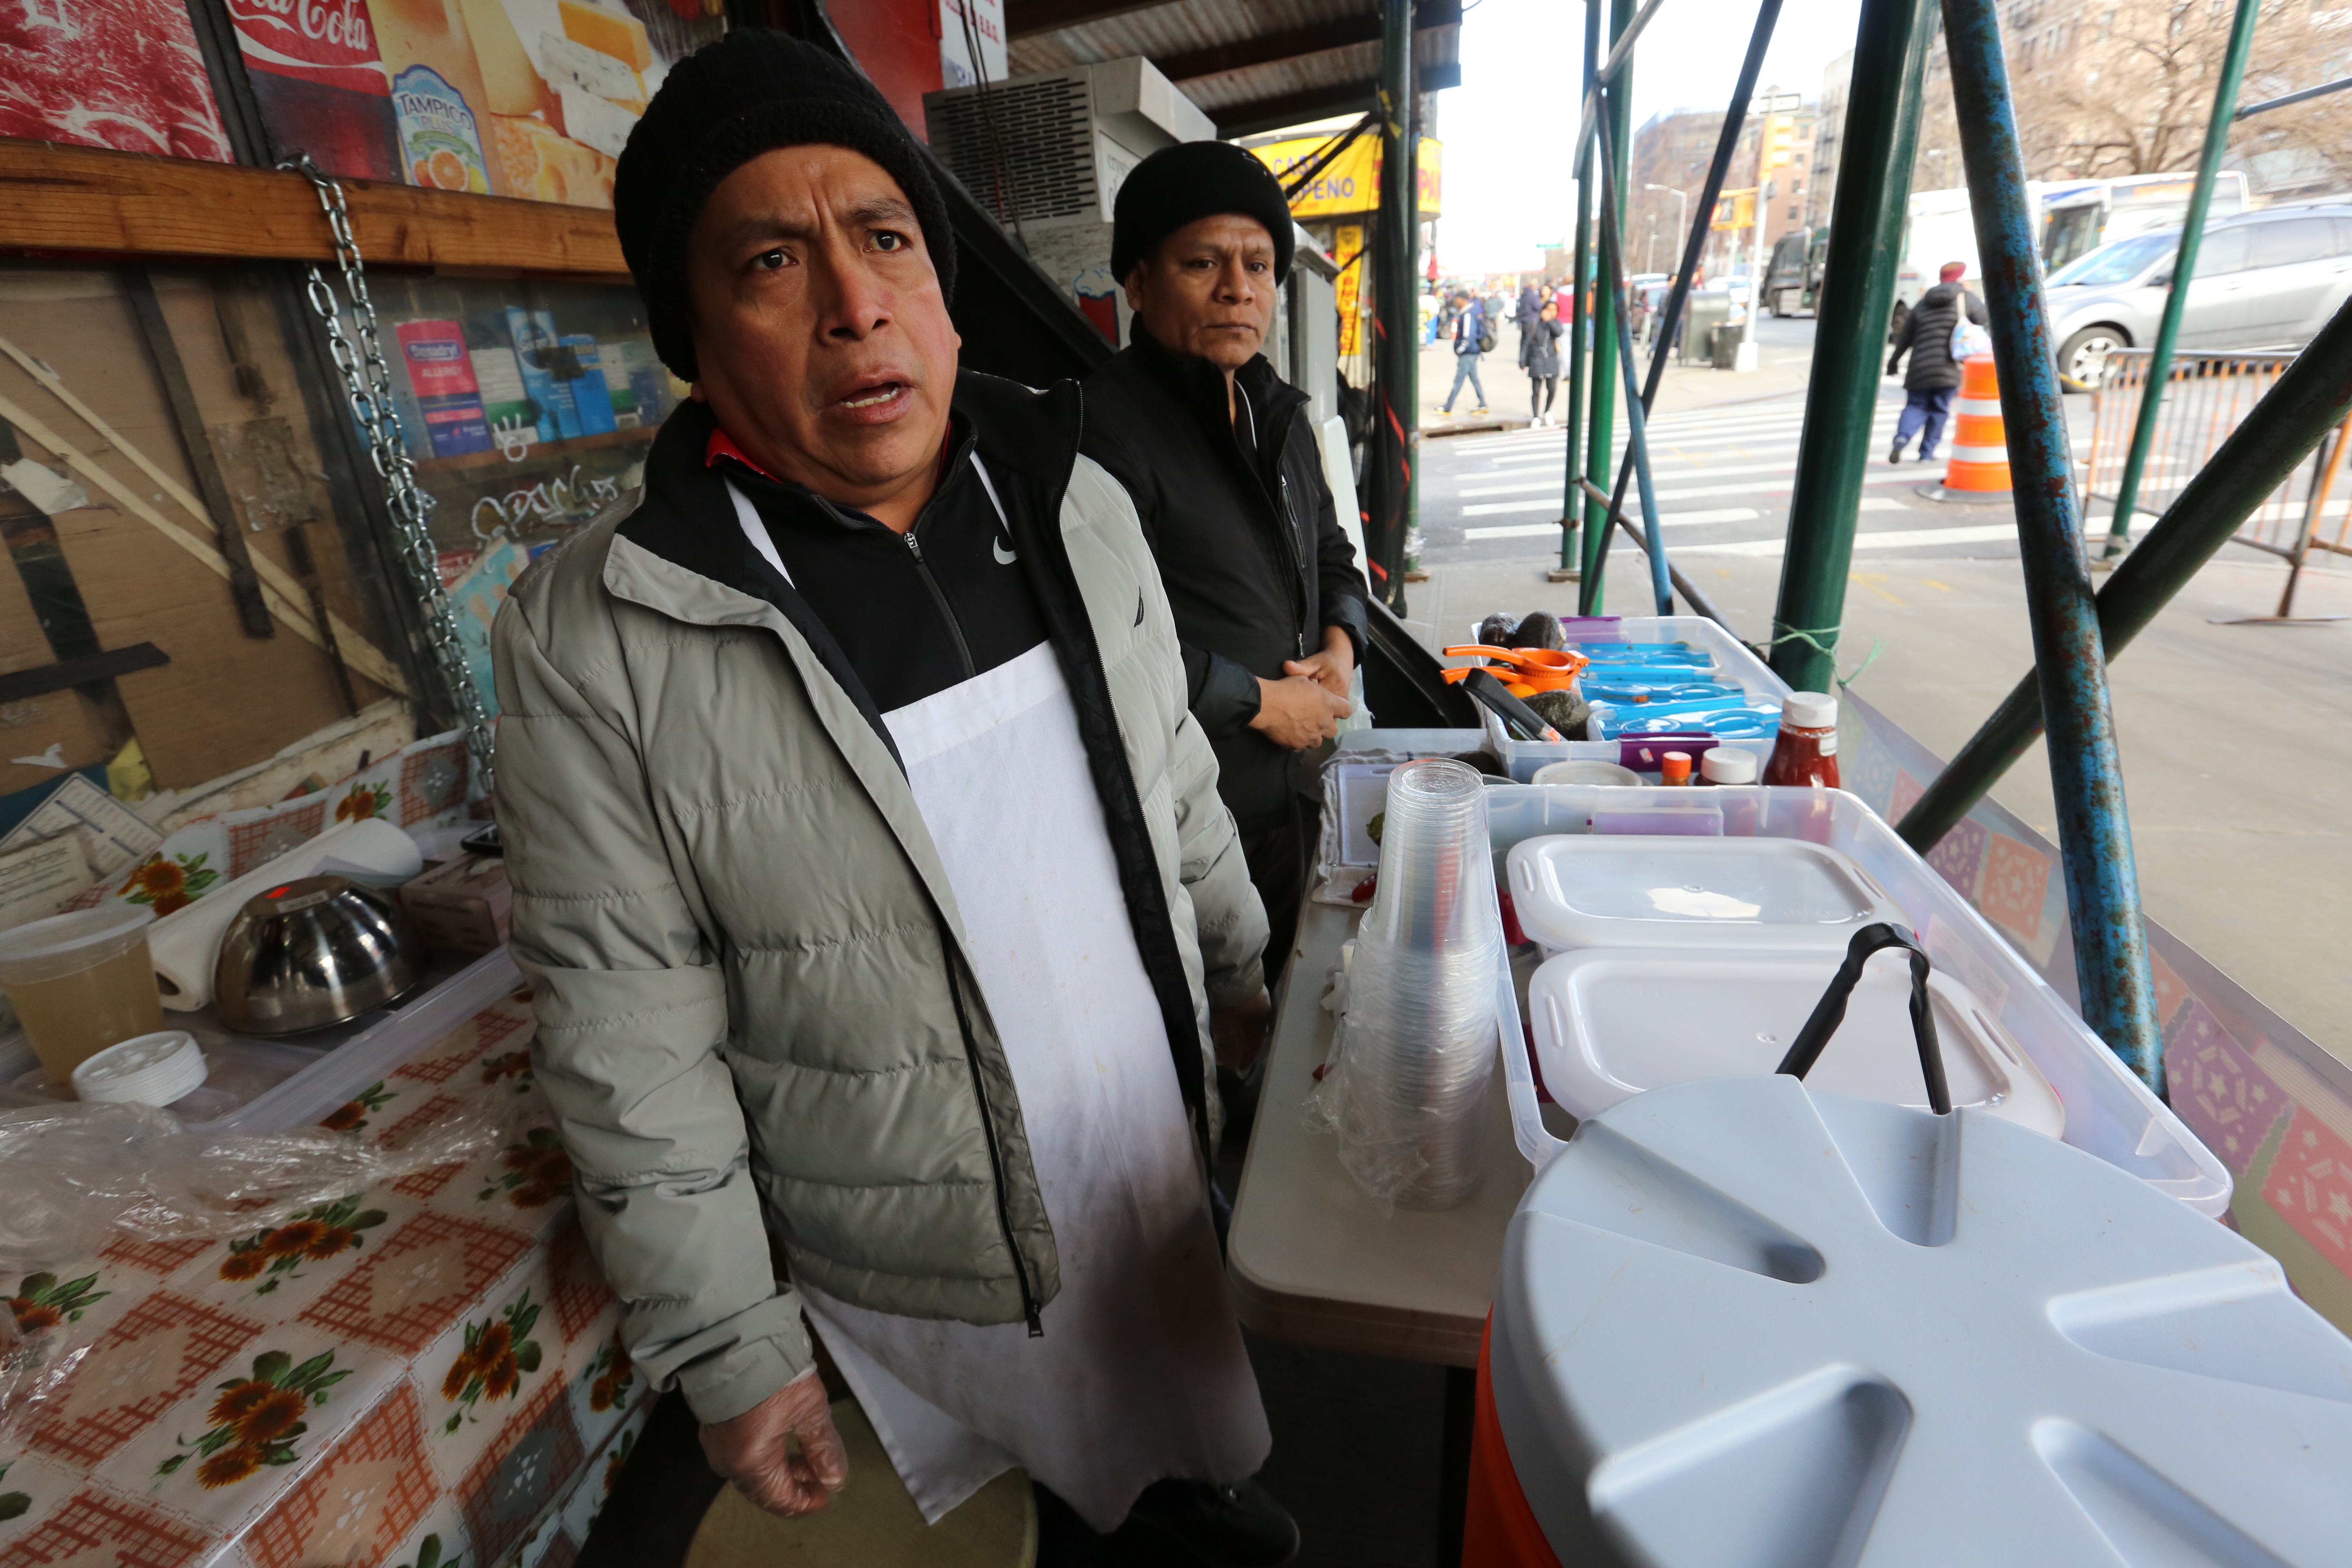 GK Food deli trabajador Francisco Gonzalez vendiendo un ceviche en Broadway y la calle Oeste 138 en Harlem. Las bodegas latinas no cerraron pero apoyan la protesta.